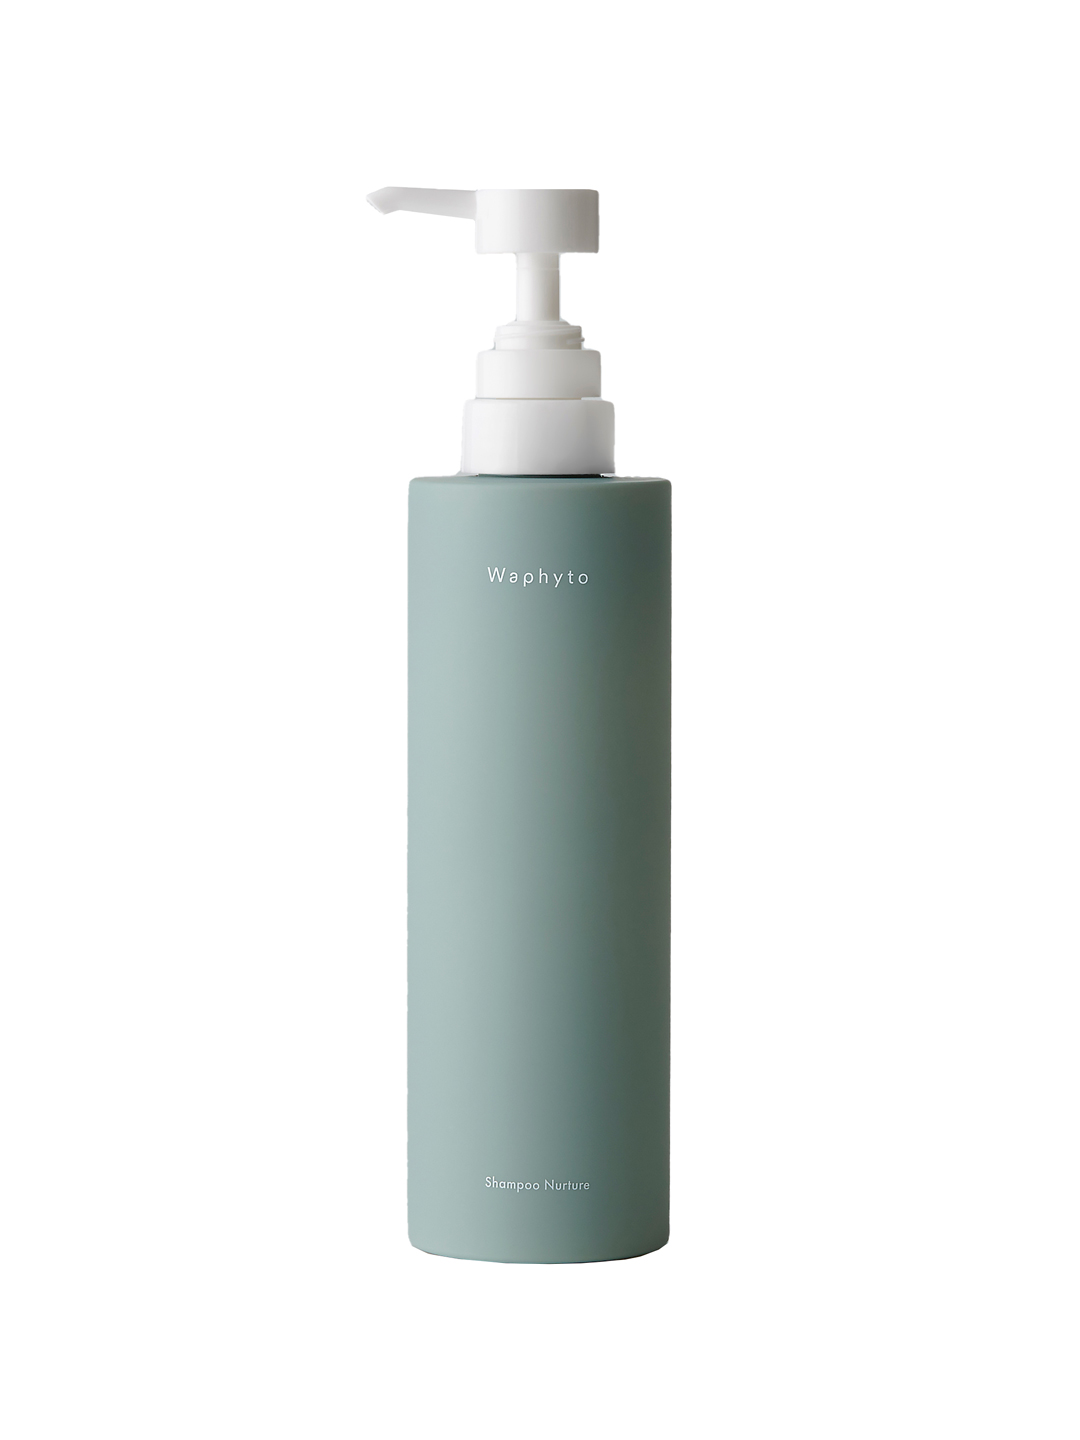 HAIR CARE / Shampoo Nurture Big Bottle